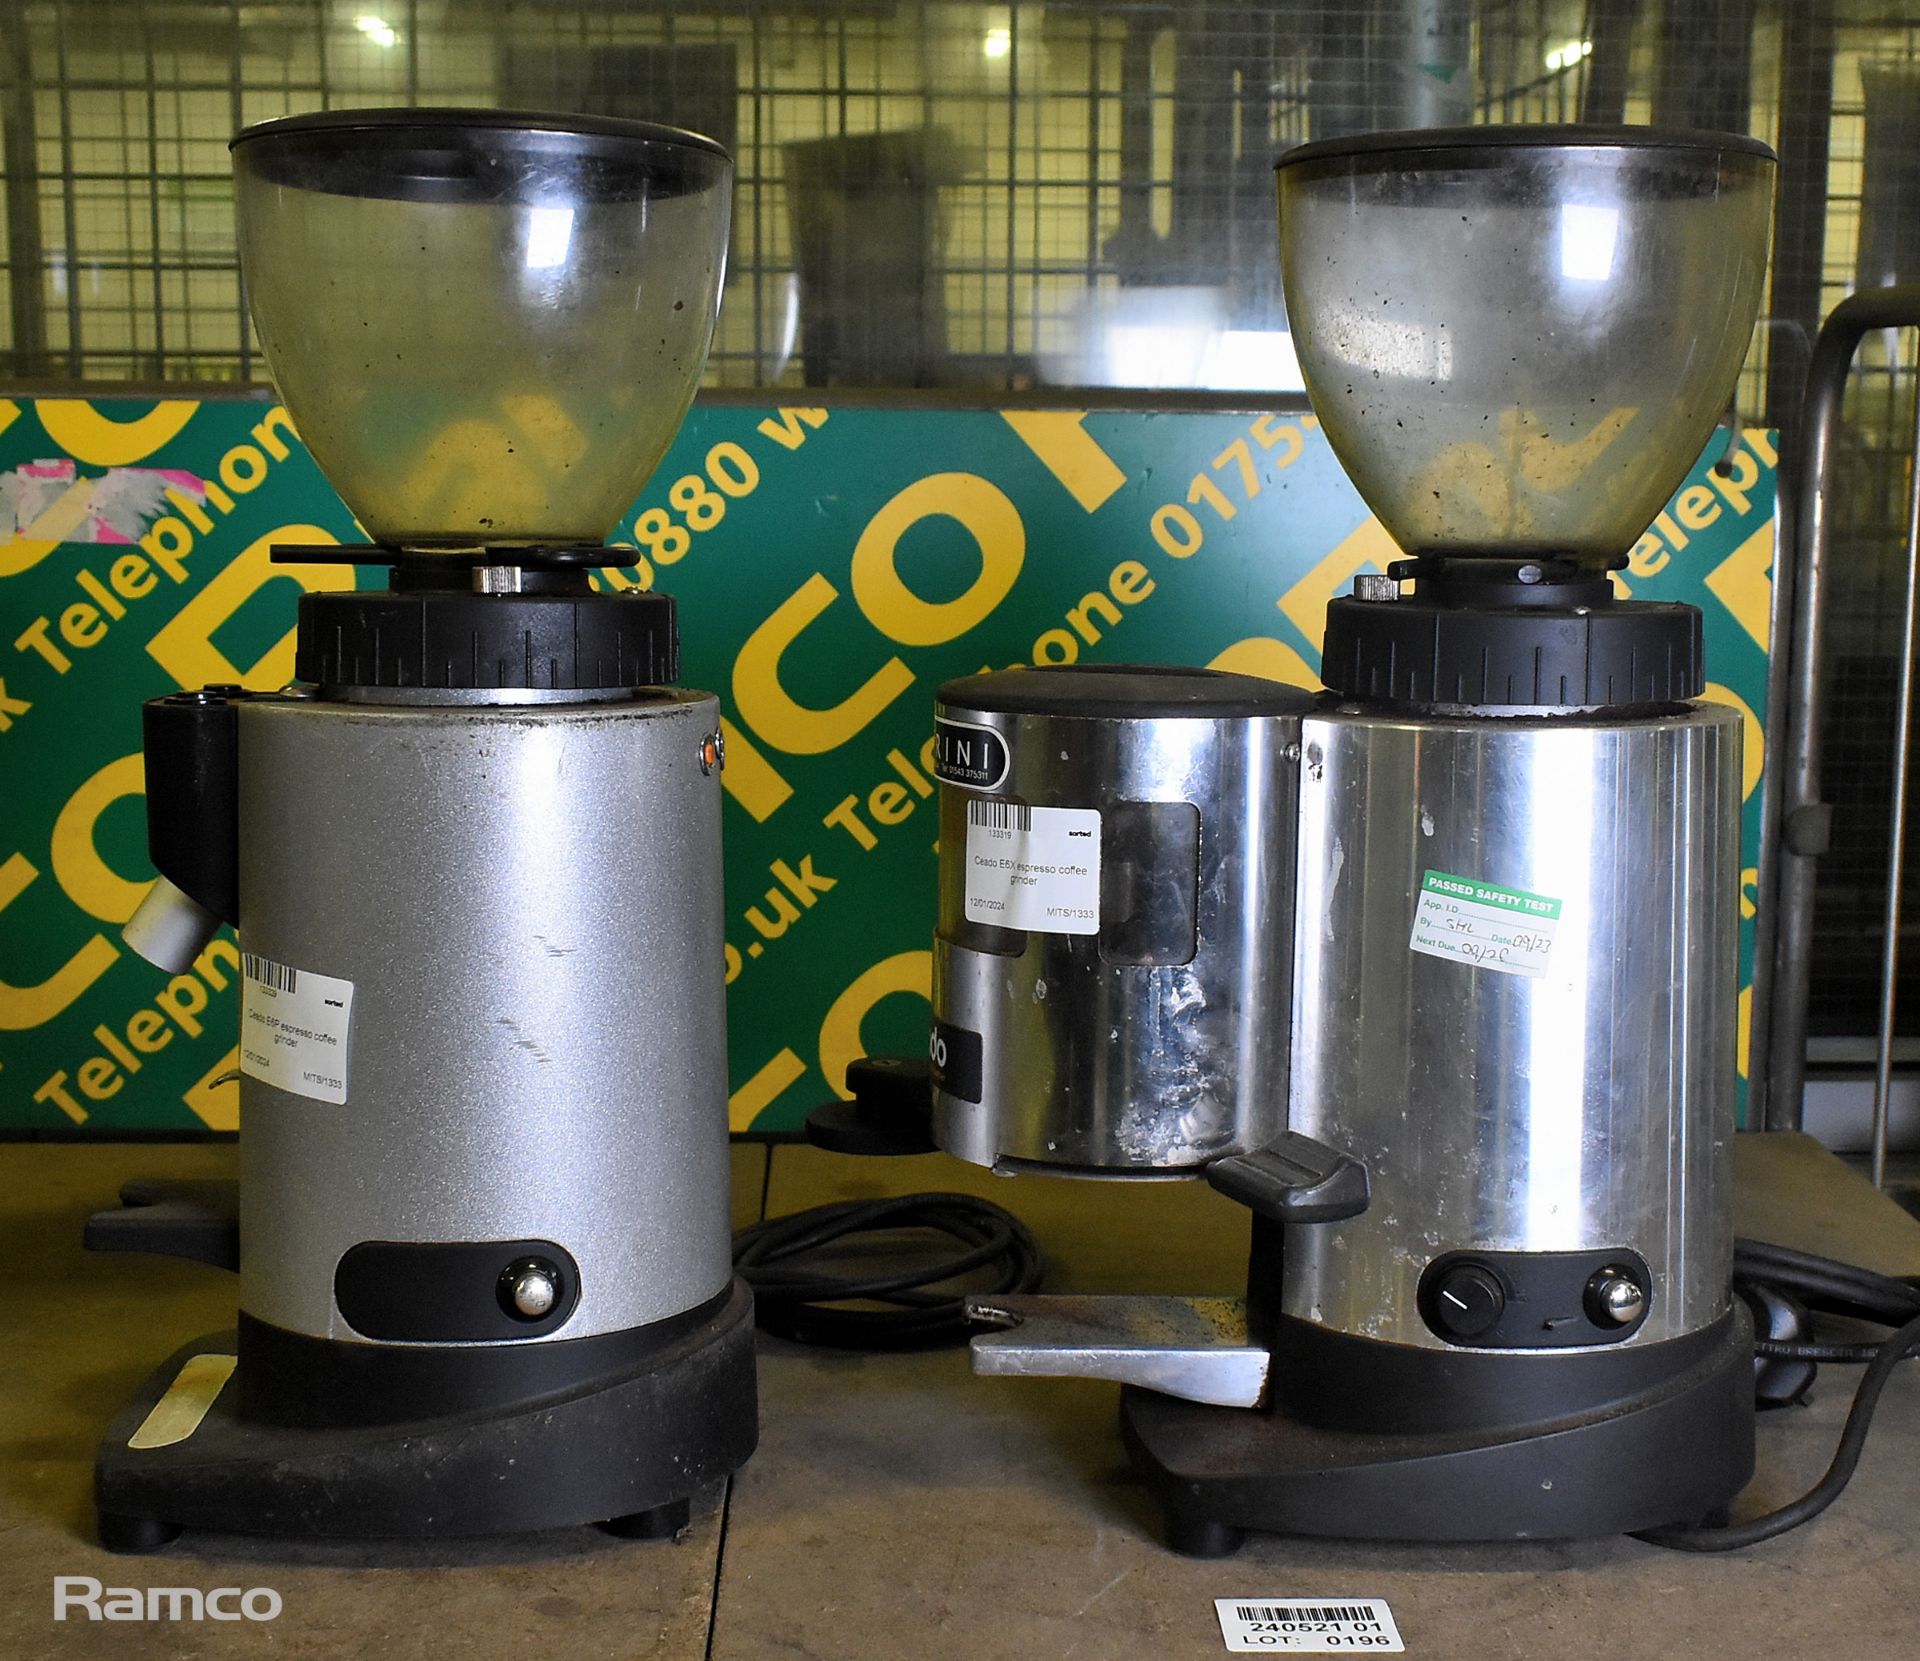 Ceado E6X espresso coffee grinder, Ceado E6P espresso coffee grinder - Bild 2 aus 6